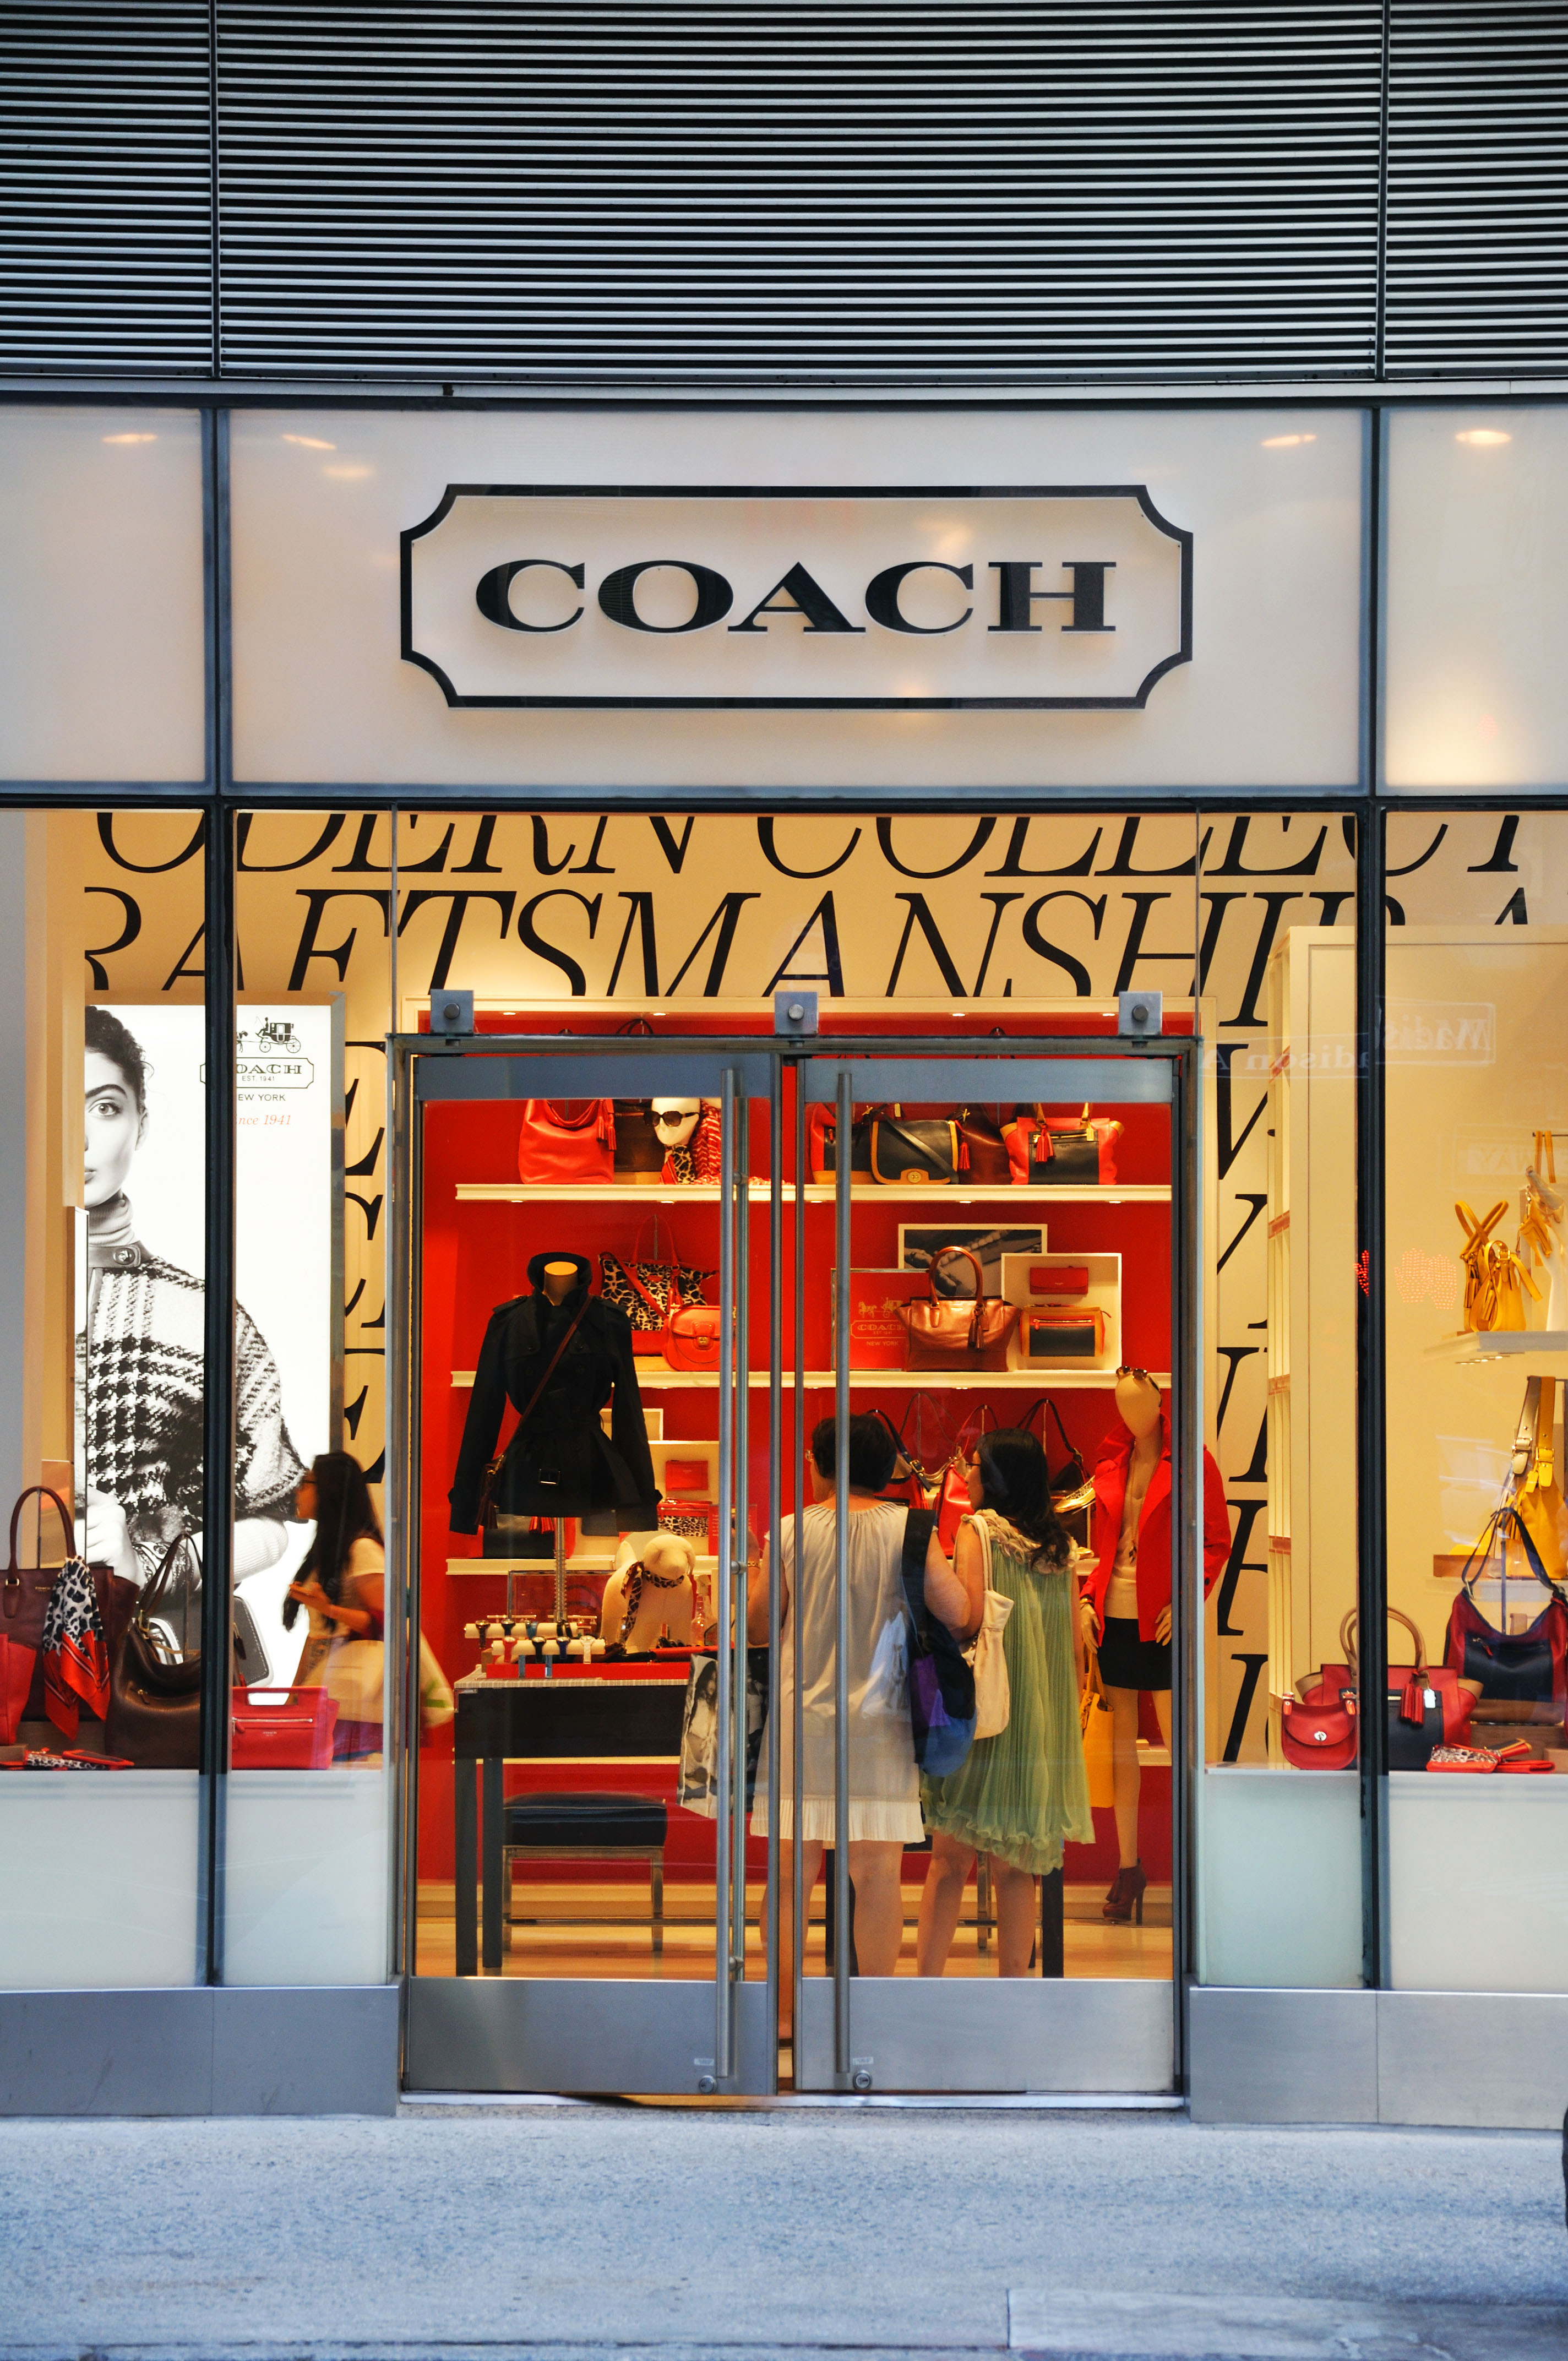 Coach designer handbag store, New York, USA.